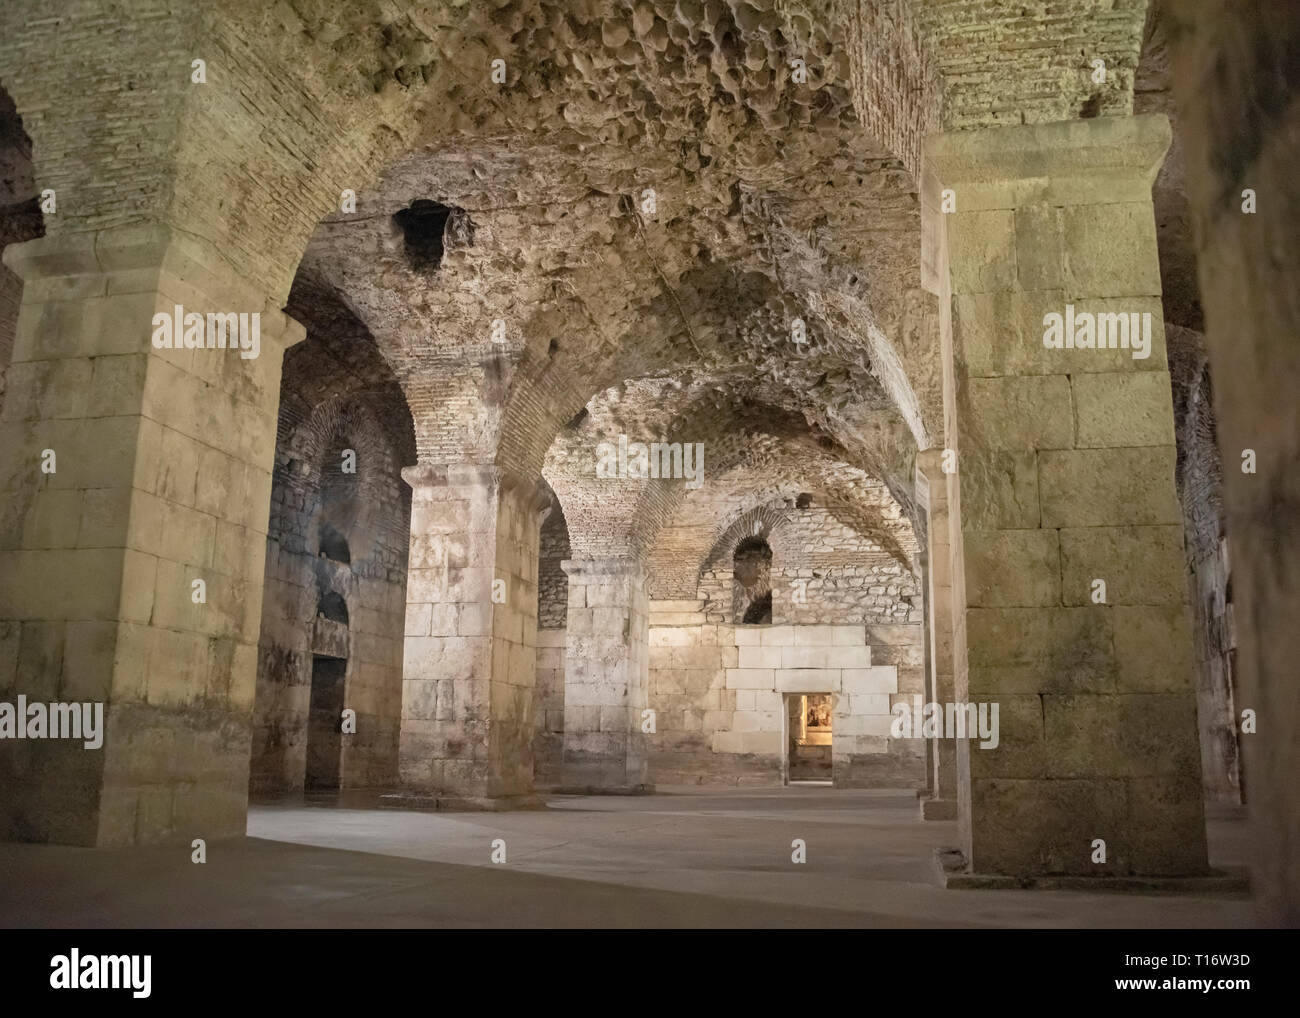 La Croatie, Split - Juin 2018 : l'empereur romain Dioclétien catacombes à Split. Utilisé comme lieu de tournage pour la série TV Game of Thrones Banque D'Images